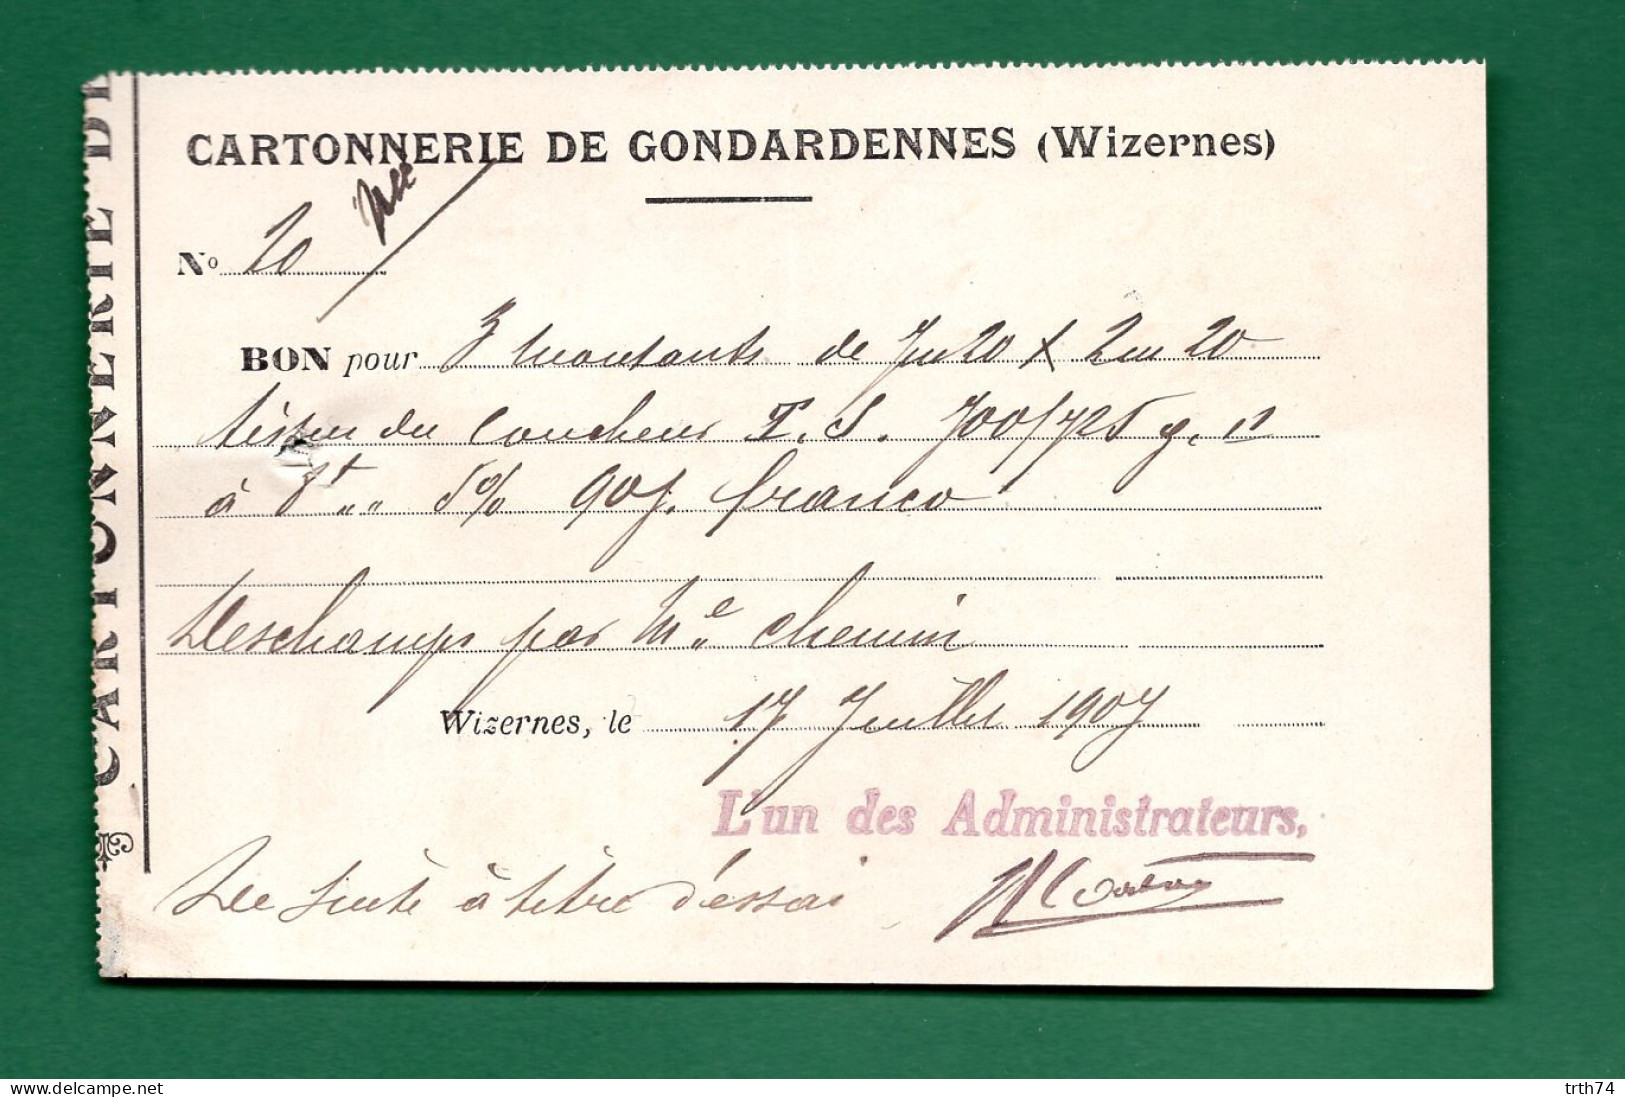 62 Wizernes Cartonnerie De Gondardennes 17 Juillet 1907 - Imprimerie & Papeterie